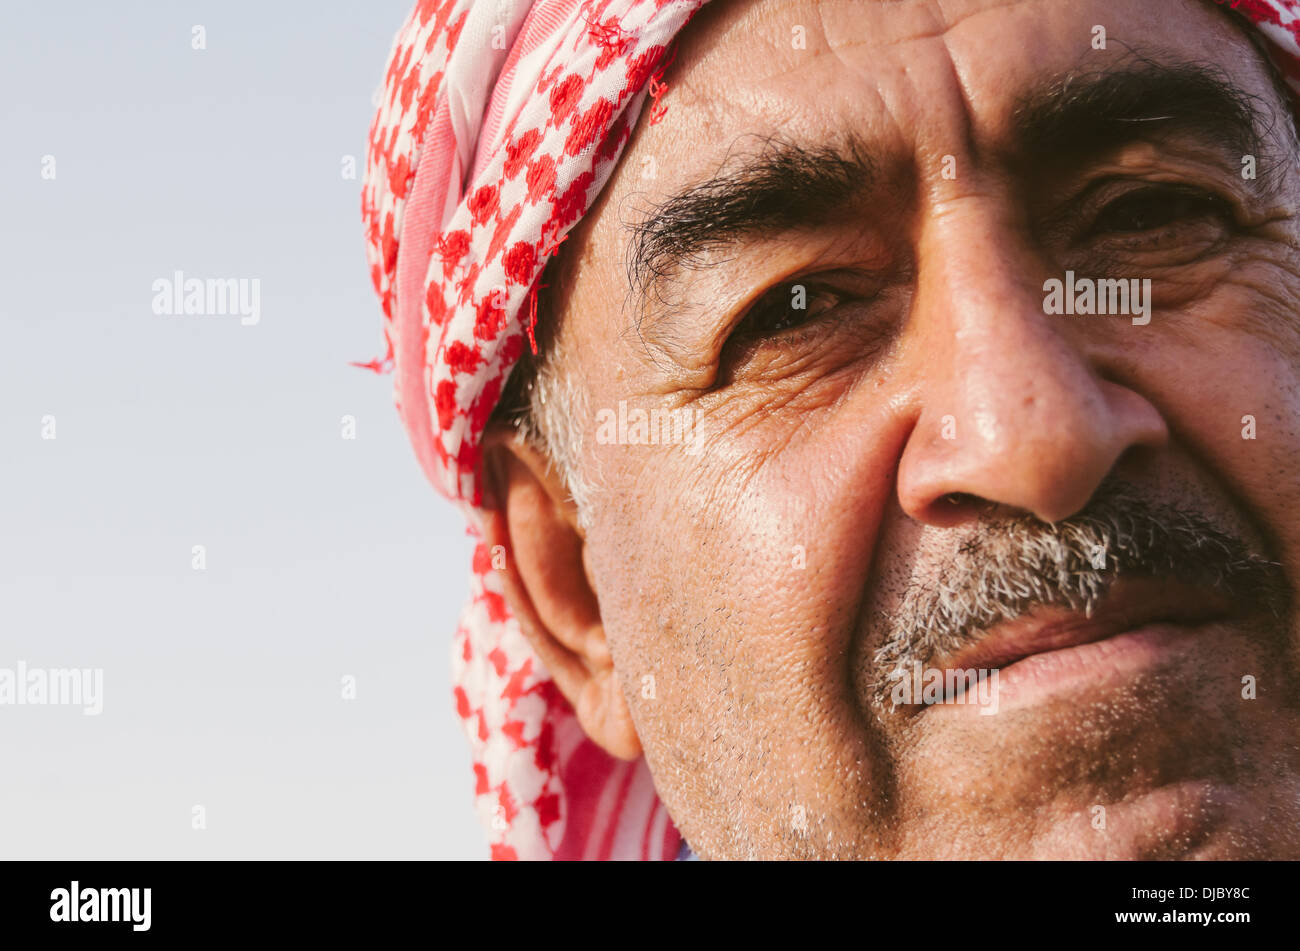 Portrait d'un homme portant un shemagh arabe avec son blanc et rouge motif à damiers. Dubaï, Émirats arabes unis. Banque D'Images